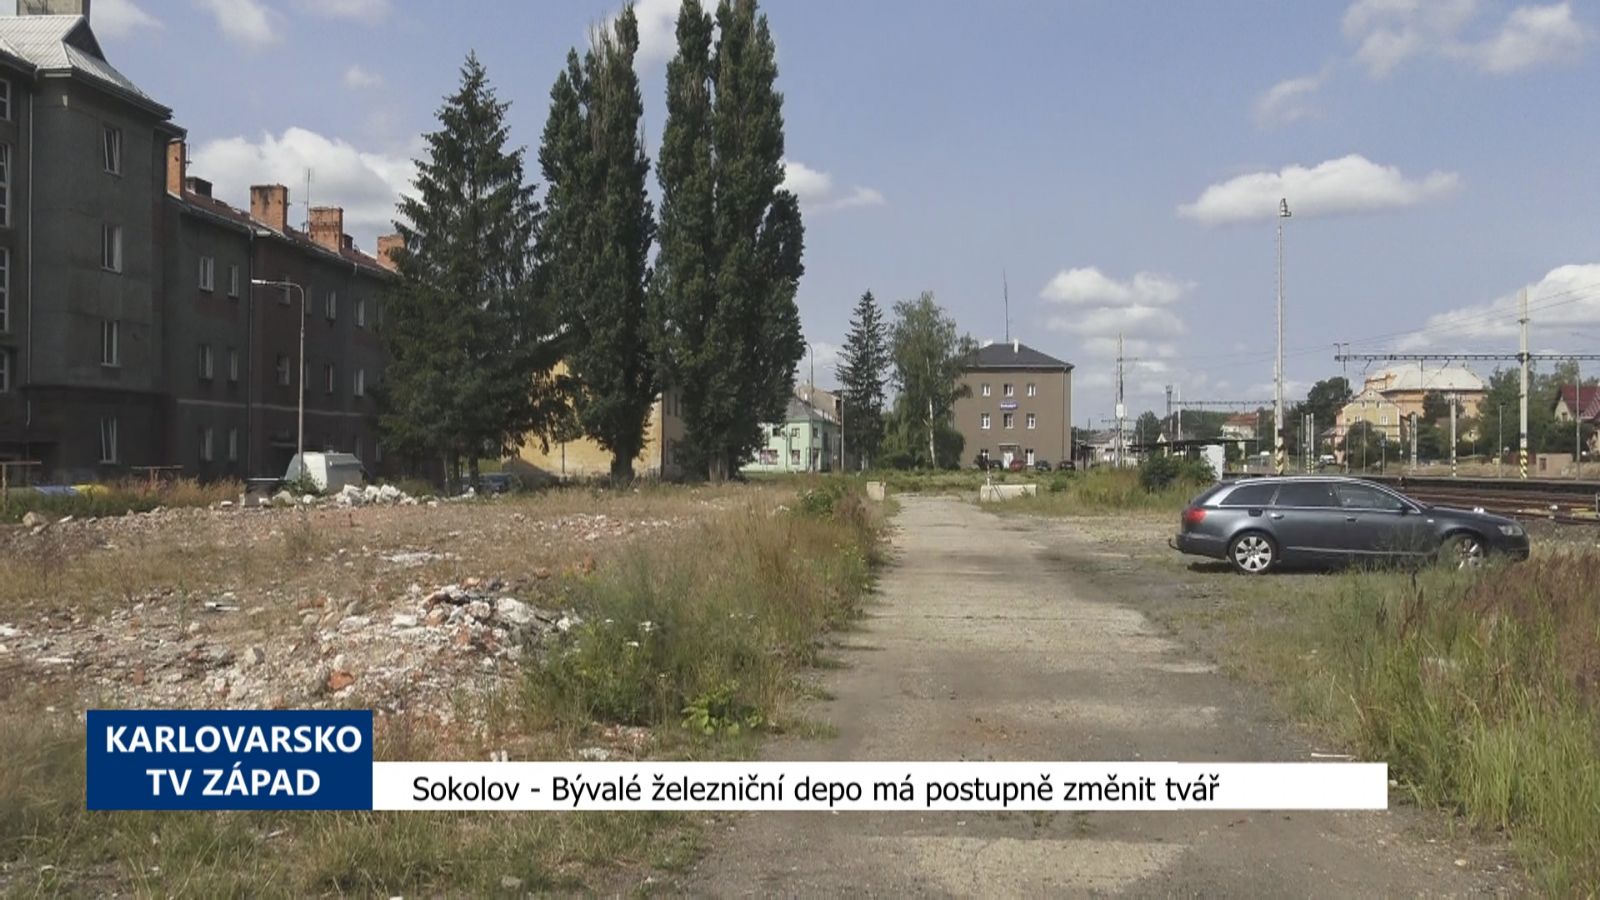 Sokolov: Bývalé železniční depo má postupně změnit tvář (TV Západ)